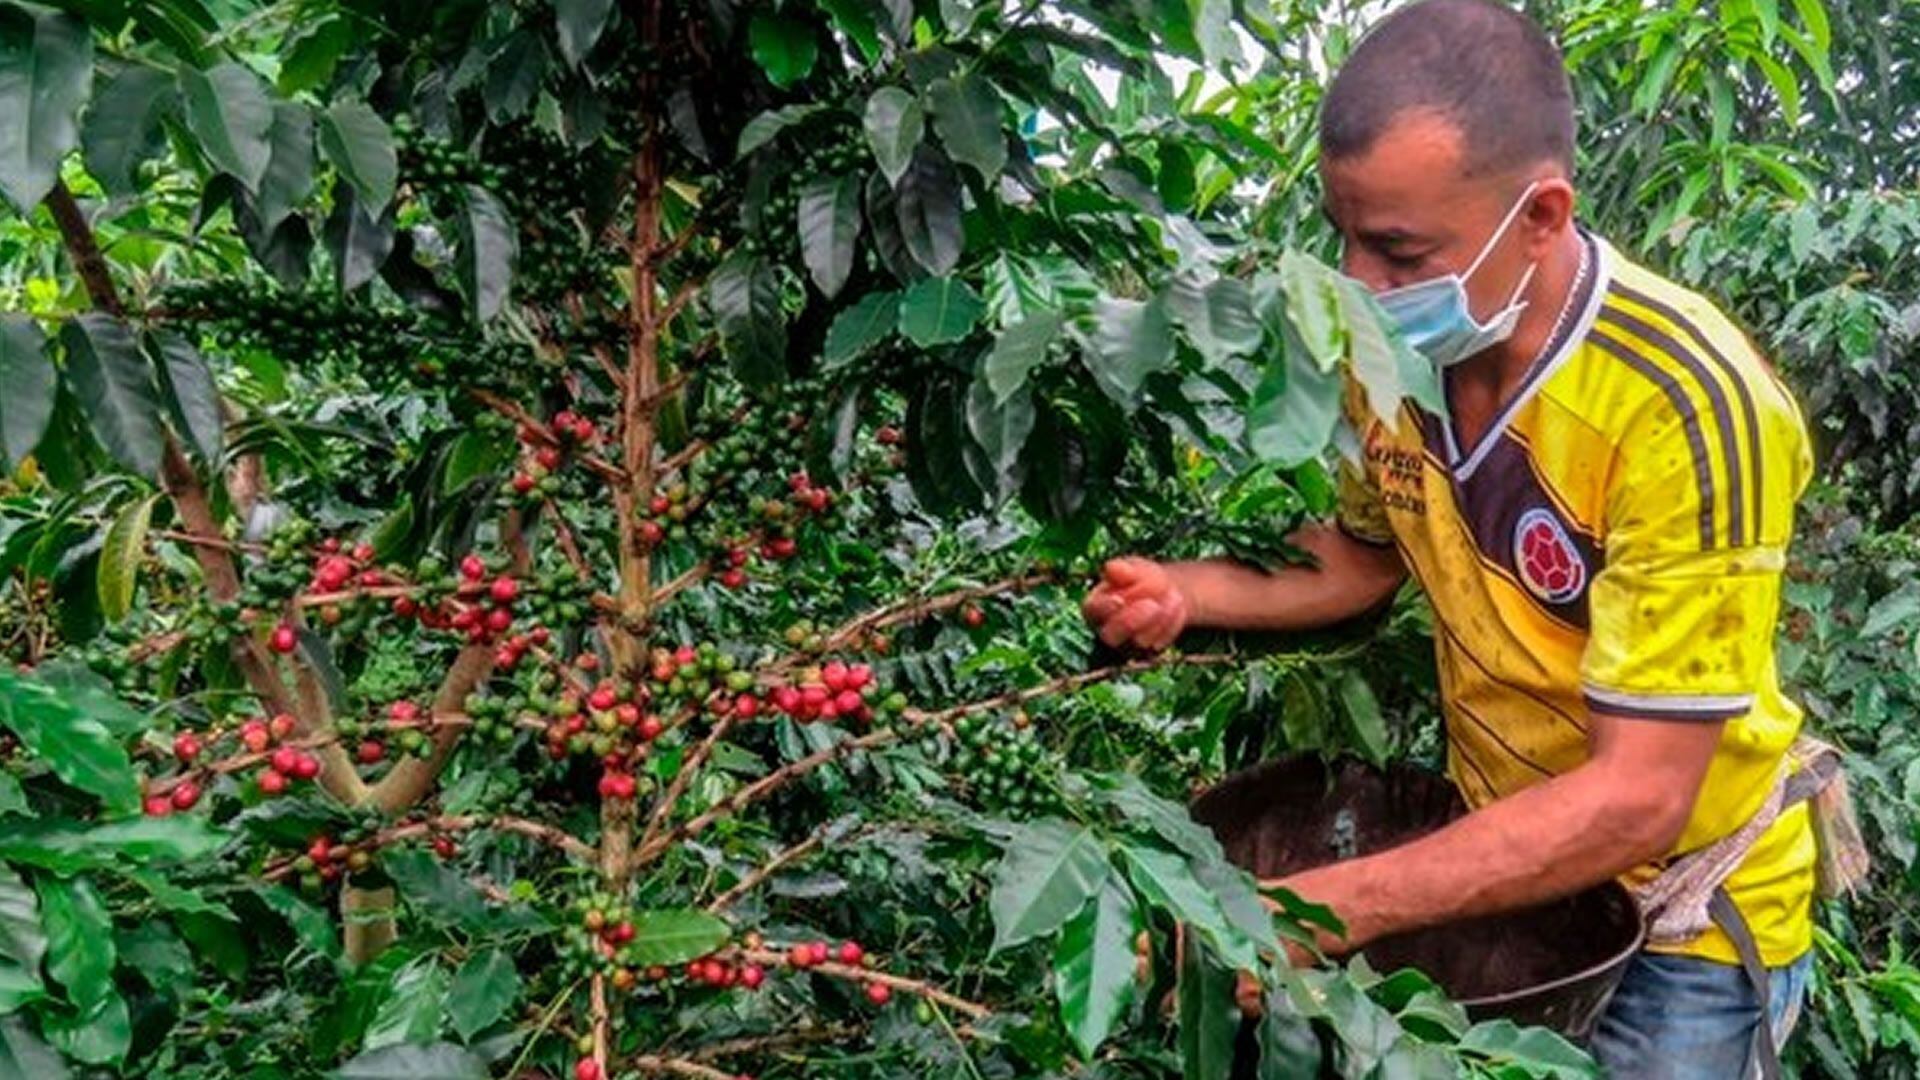 Un agricultor recolecta granos de café en una plantación en el municipio de La Tebaida, departamento de Quindío, Colombia, el 21 de mayo de 2020. Fotografía: AFP.